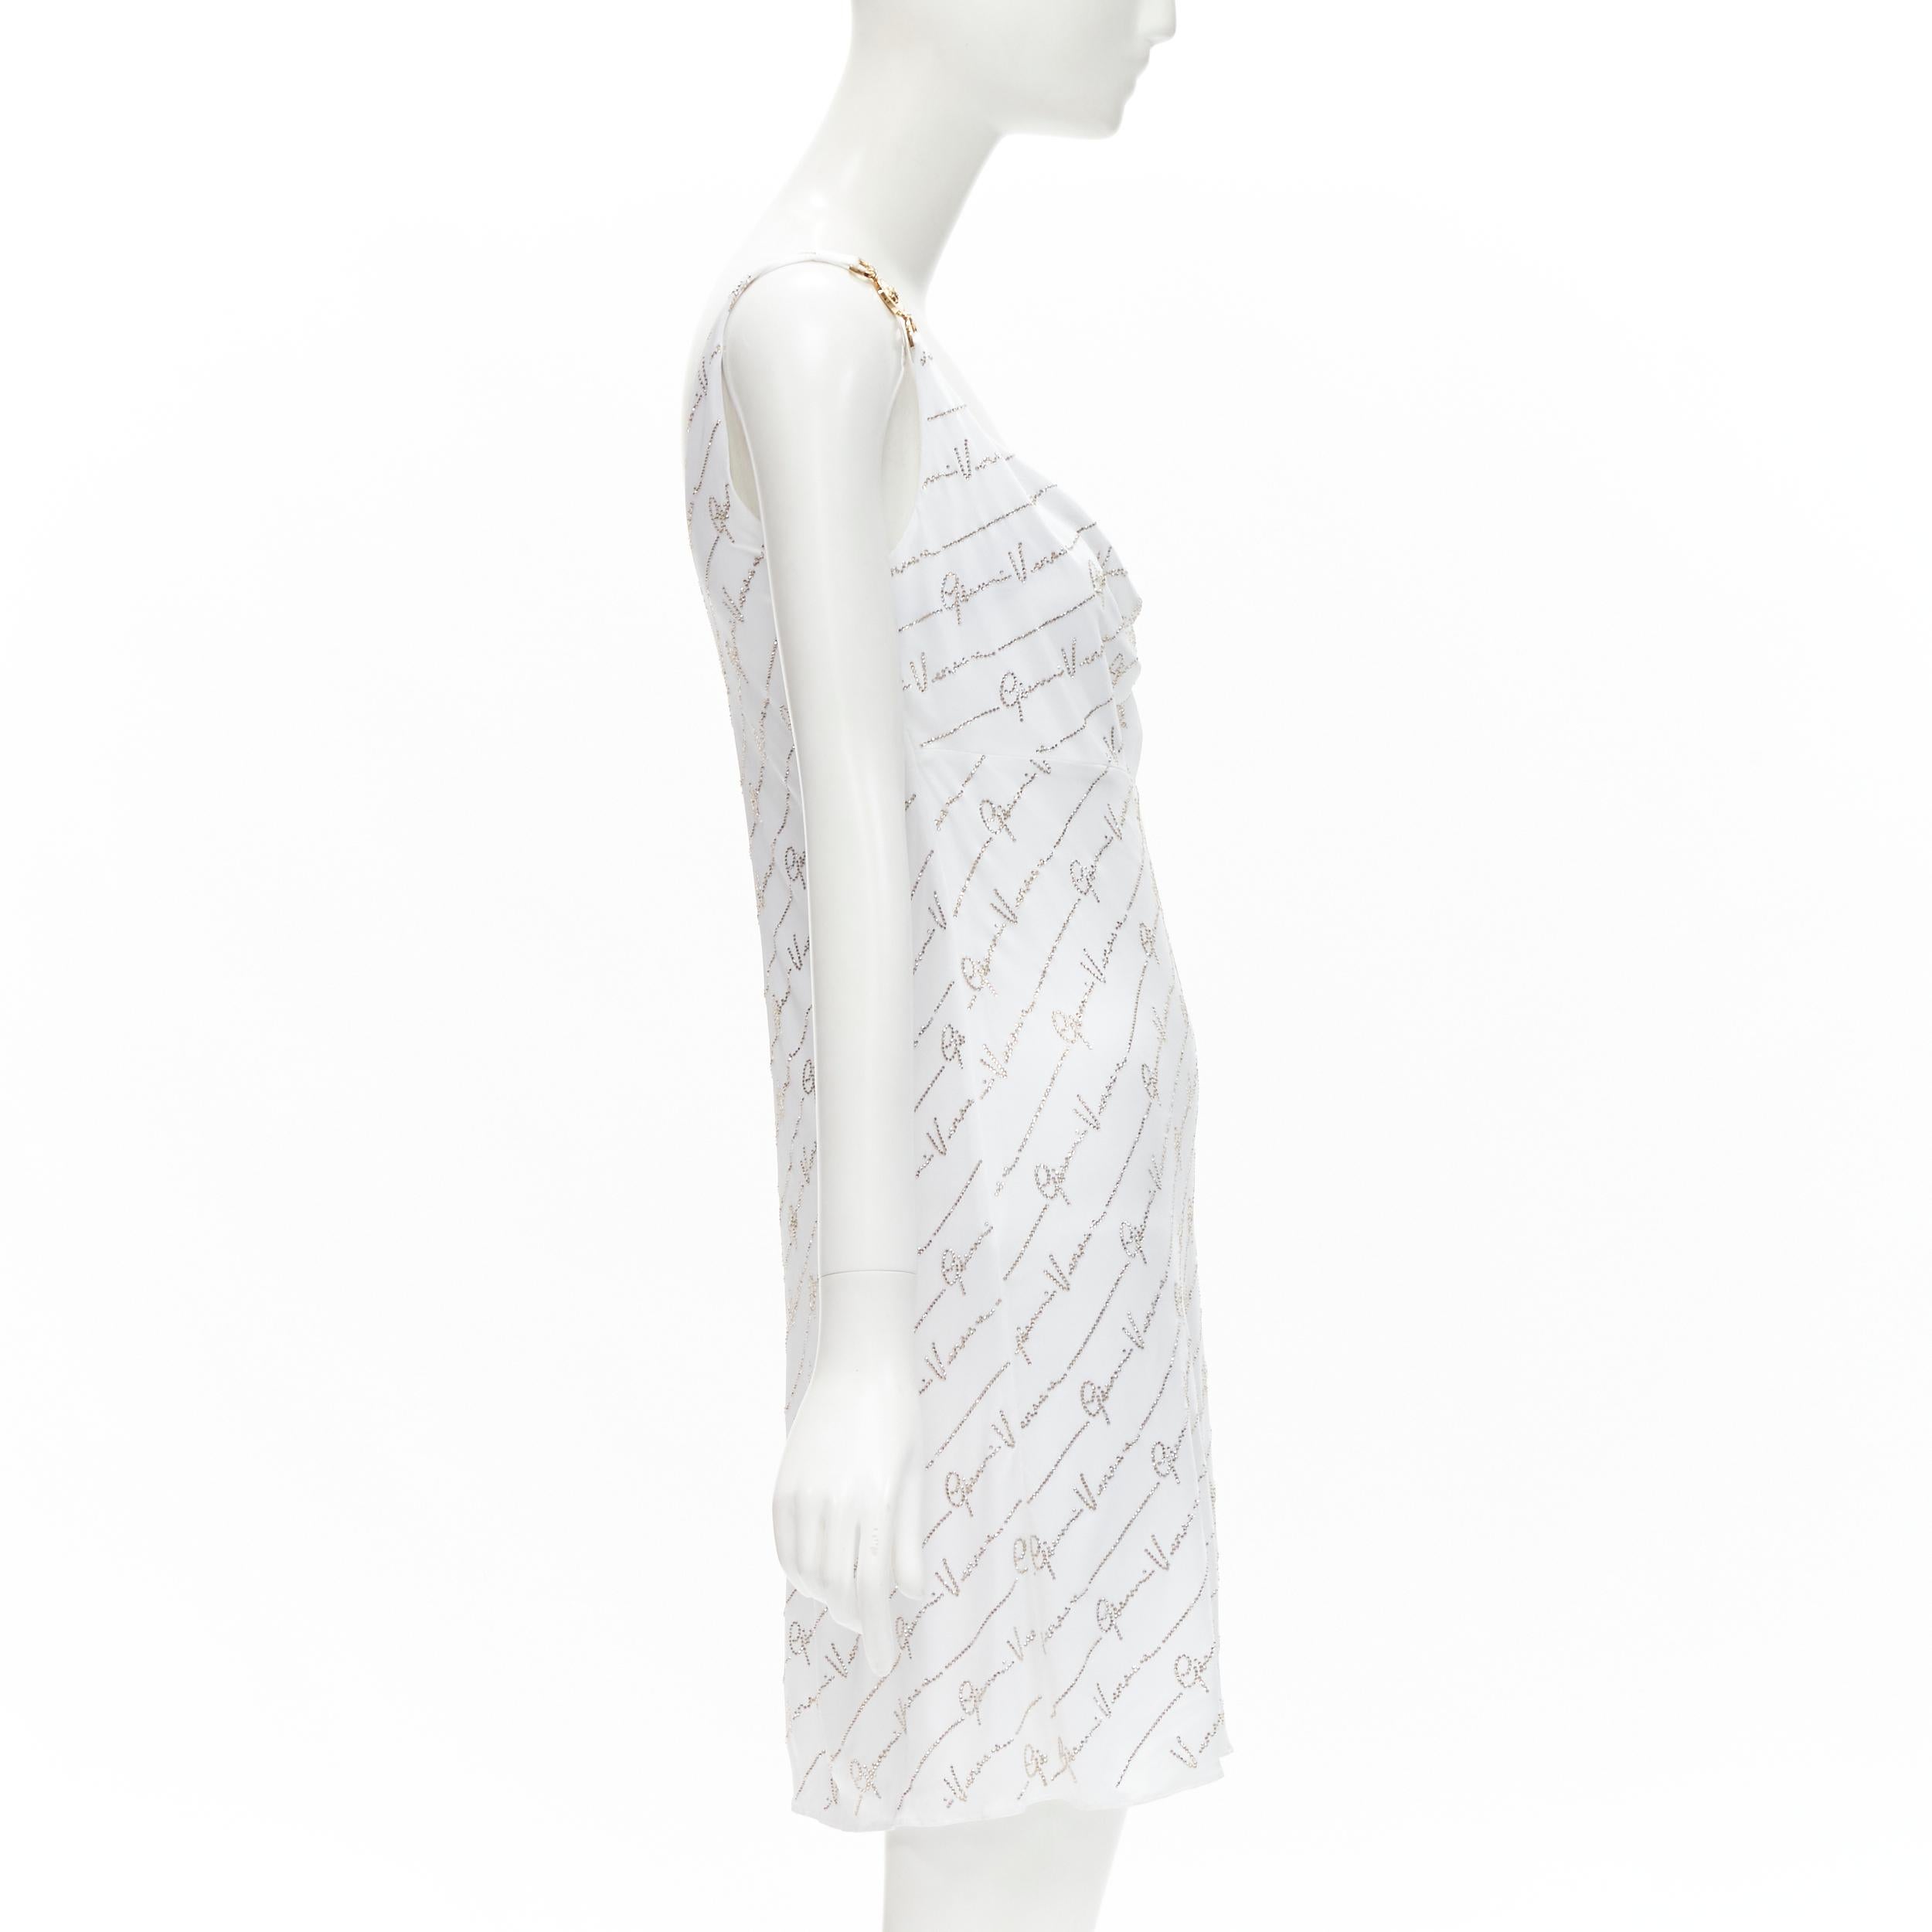 Versace - Robe Medusa incrustée de cristaux blancs incrustés, signature Gianni, taille IT 44 L, état neuf Neuf - En vente à Hong Kong, NT